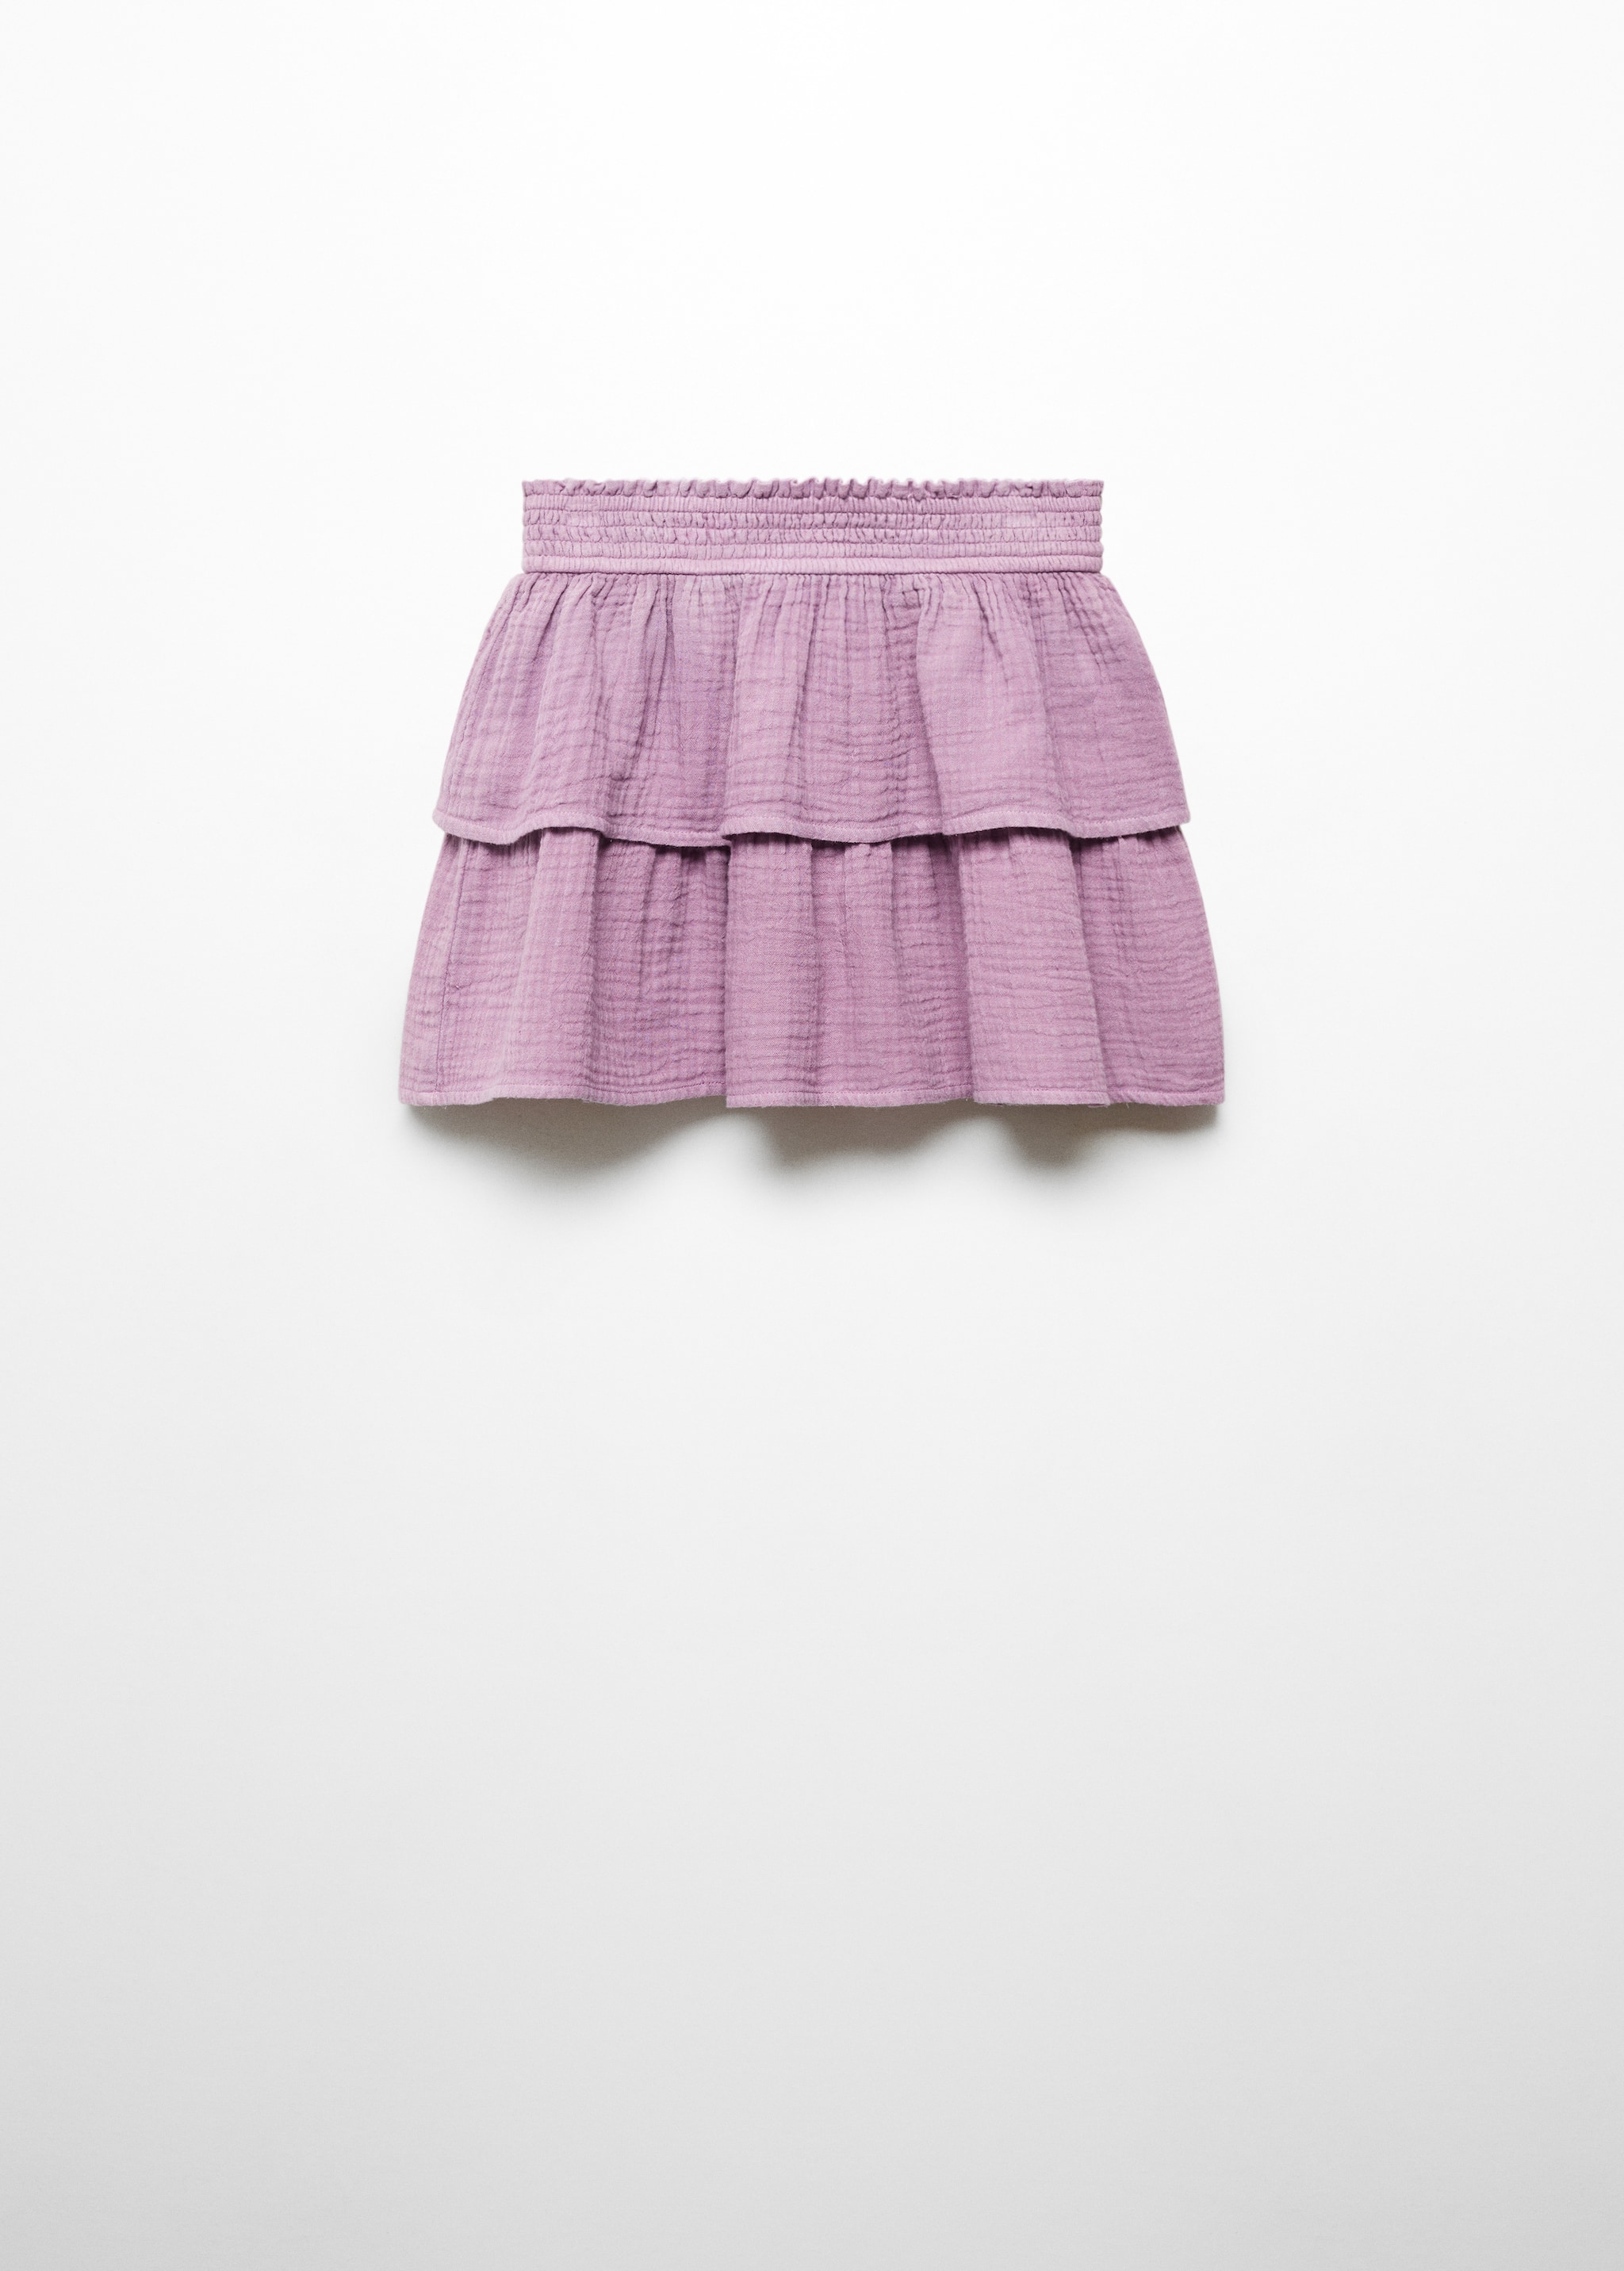 Хлопковая юбка с воланами - Изделие без модели